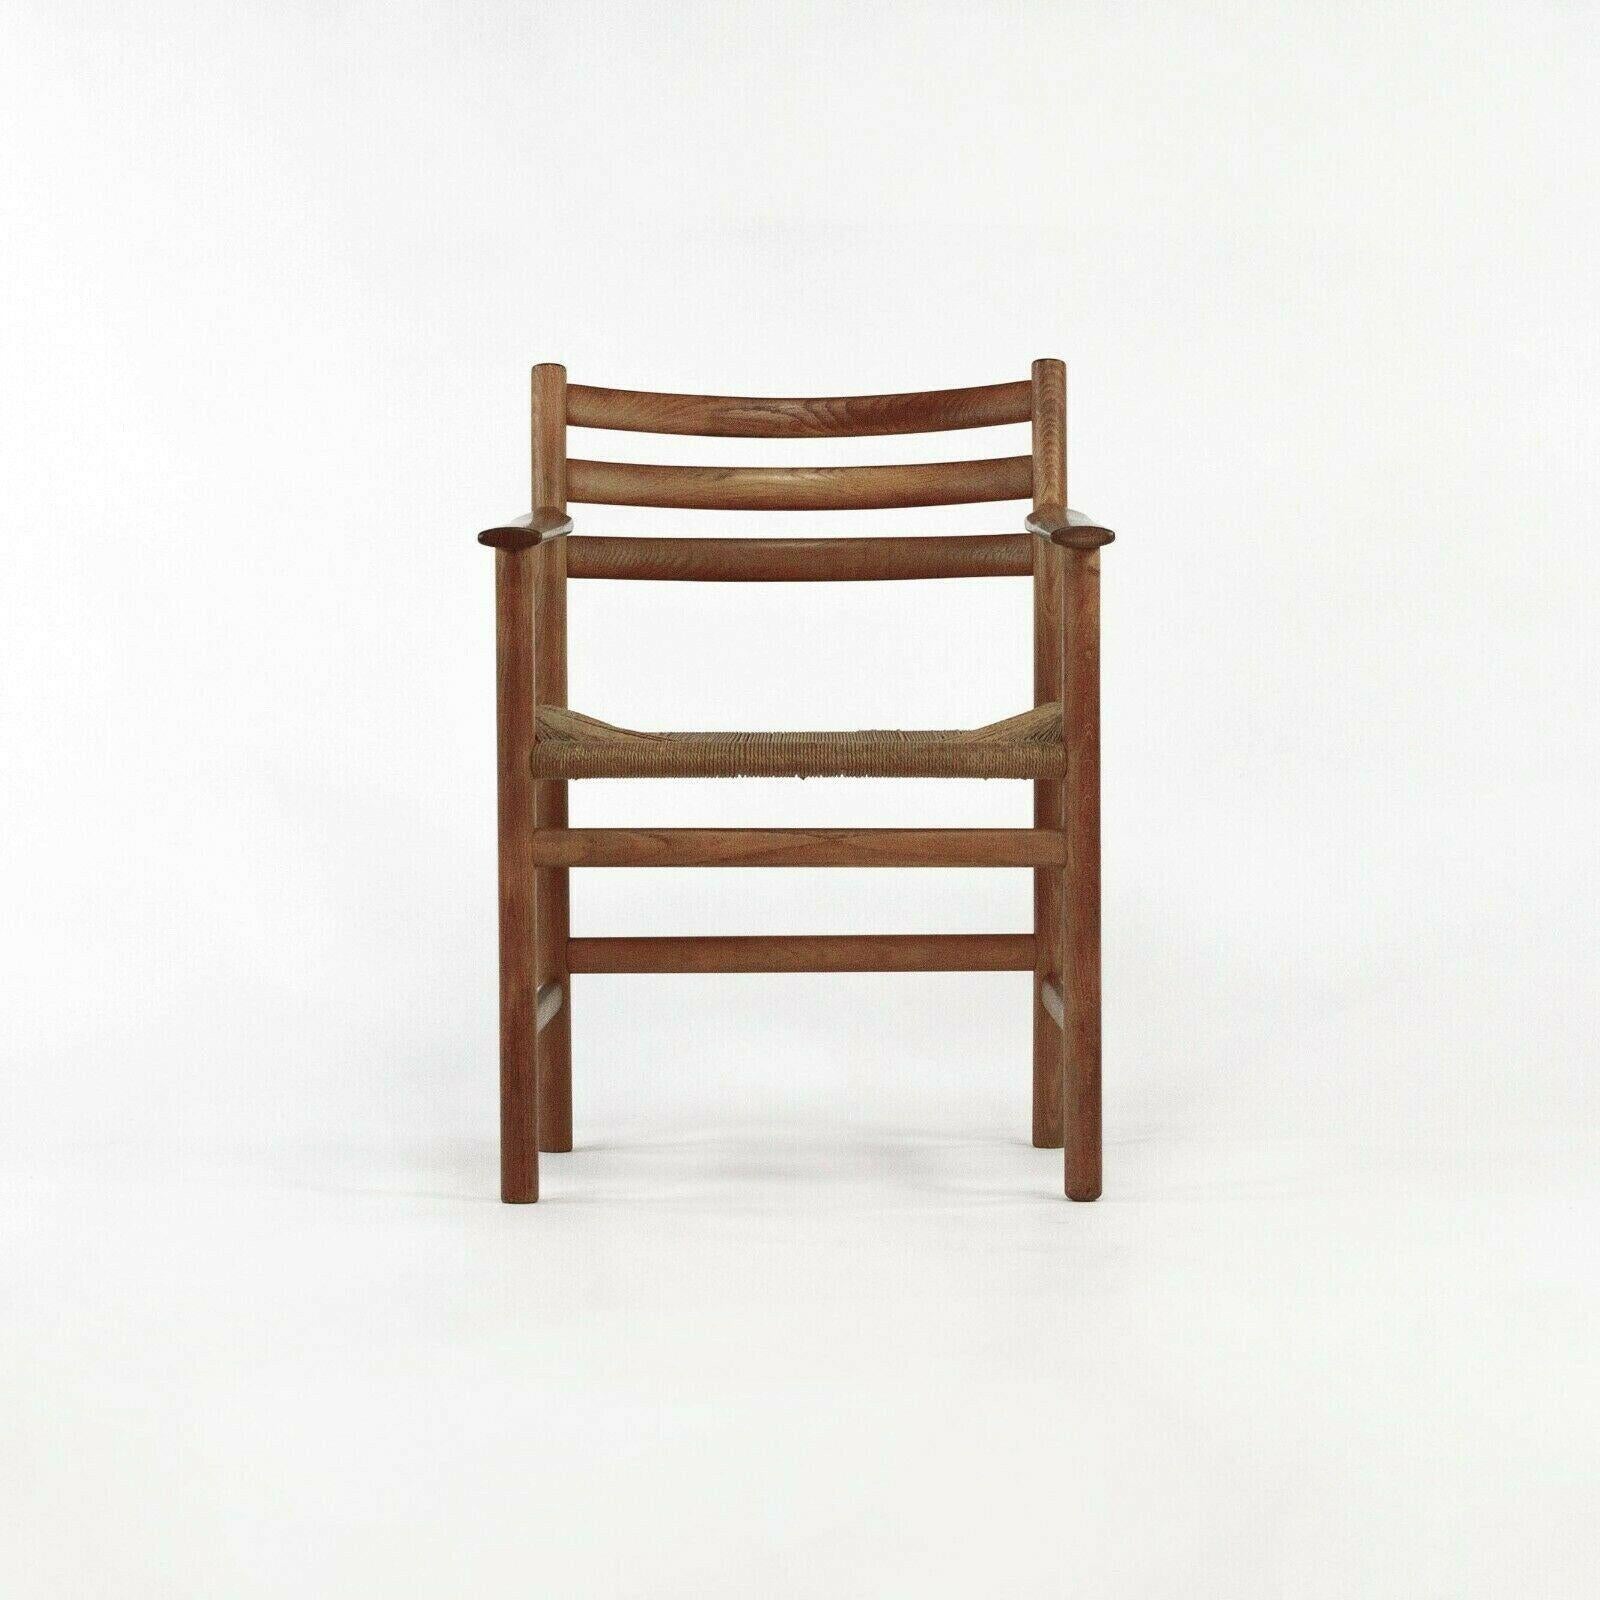 Vintage By est une chaise de salle à manger Poul Volther des années 1960, modèle 351, produite par Soro Stolefabrik au Danemark. Il s'agit d'un exemple classique du travail de Volther, dont les lignes rappellent celles d'autres maîtres tels que